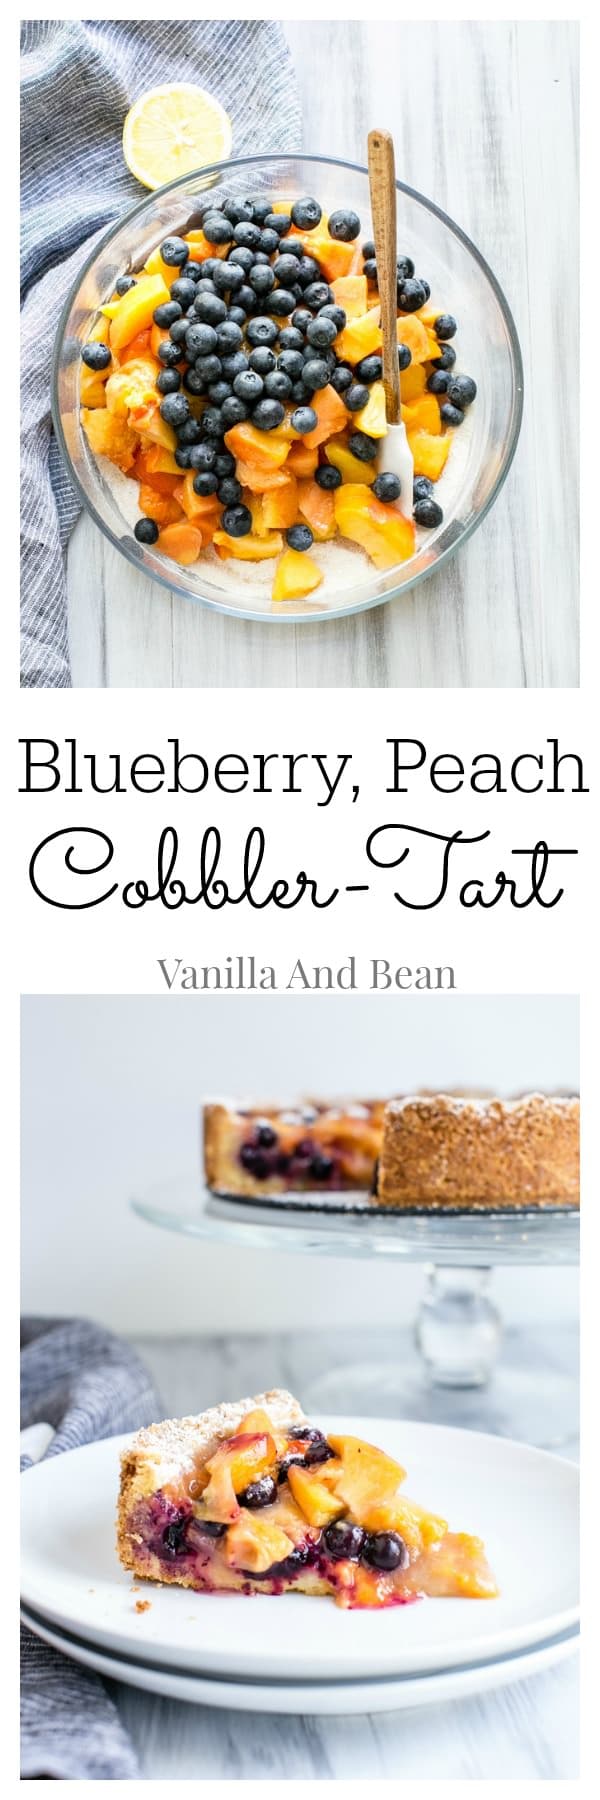 Blueberry Peach Cobbler-Tart | Vanilla And Bean